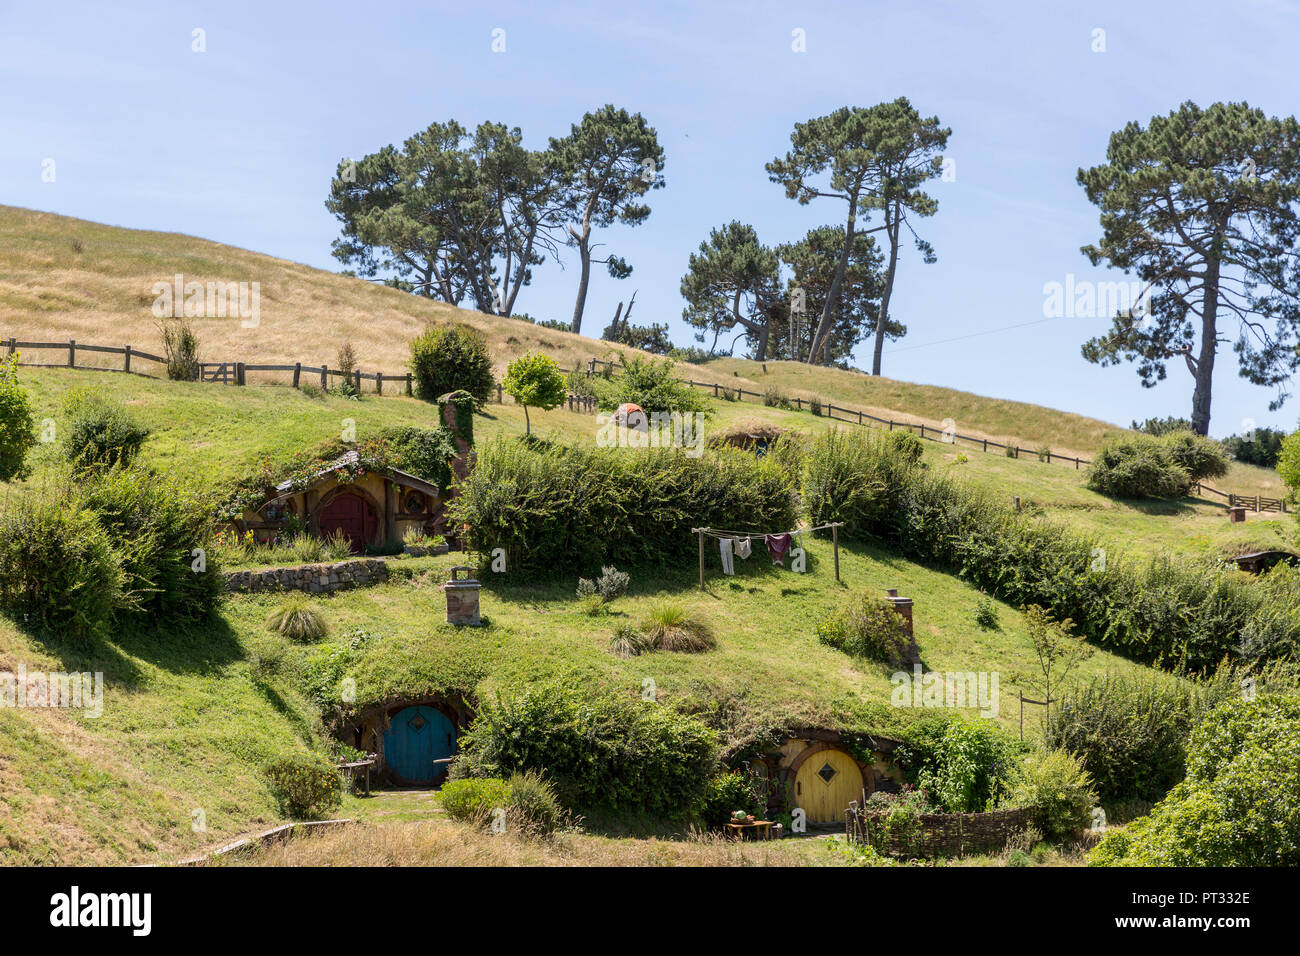 Hobbit casas sobre la colina, Hobbiton Movie Set, Matamata, región de Waikato, Isla del Norte, Nueva Zelanda Foto de stock